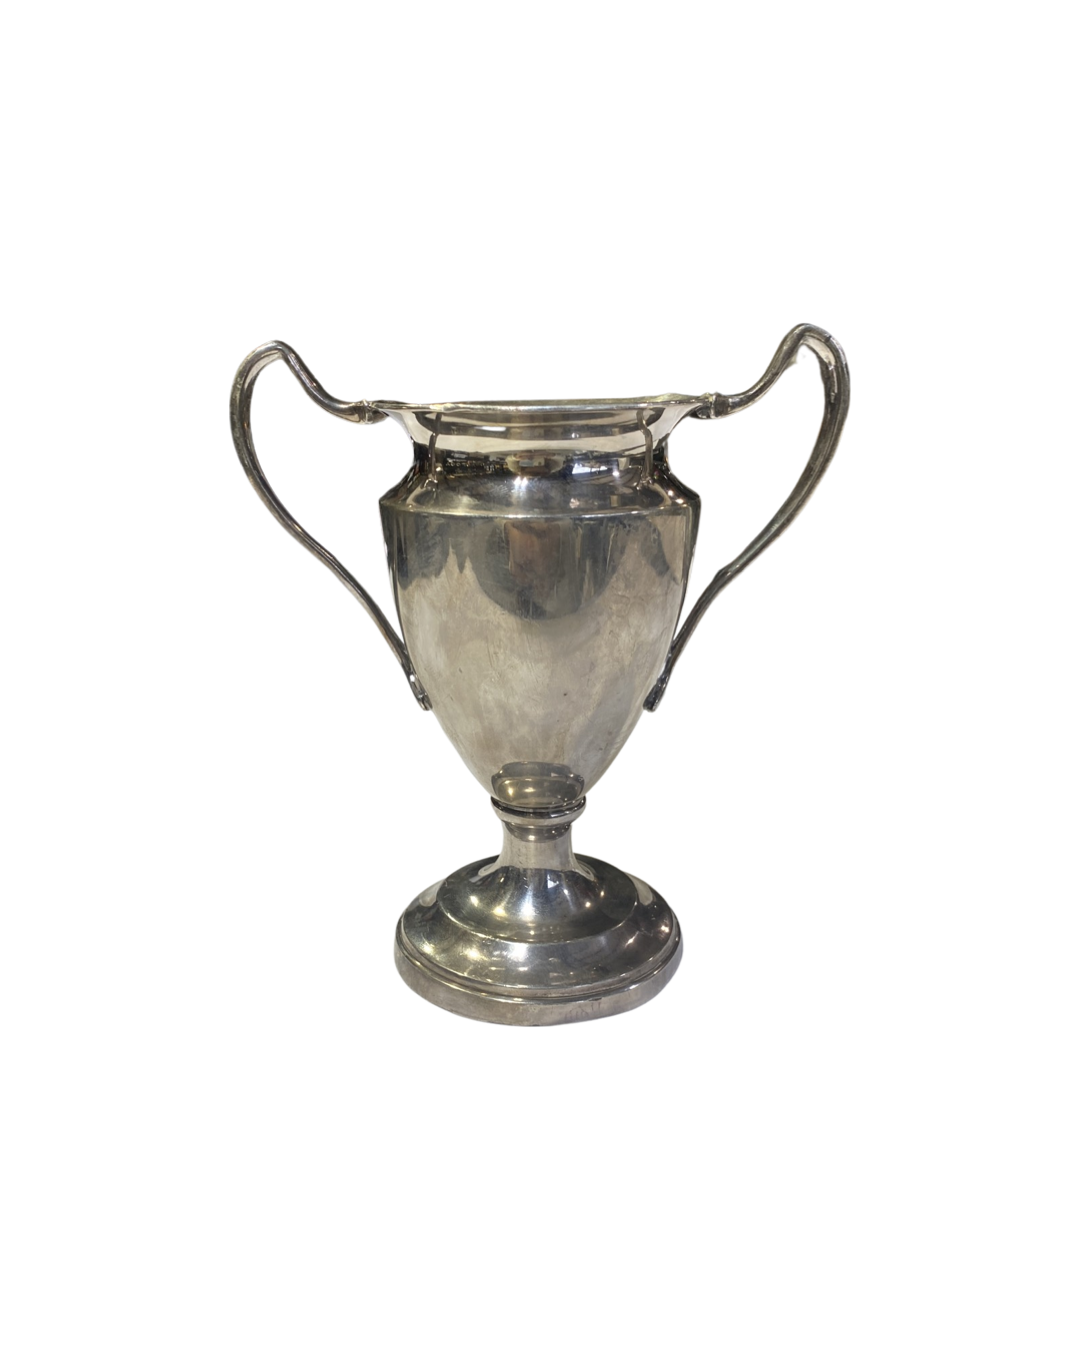 1913 Cowichan Lake Regional Sporting Trophy